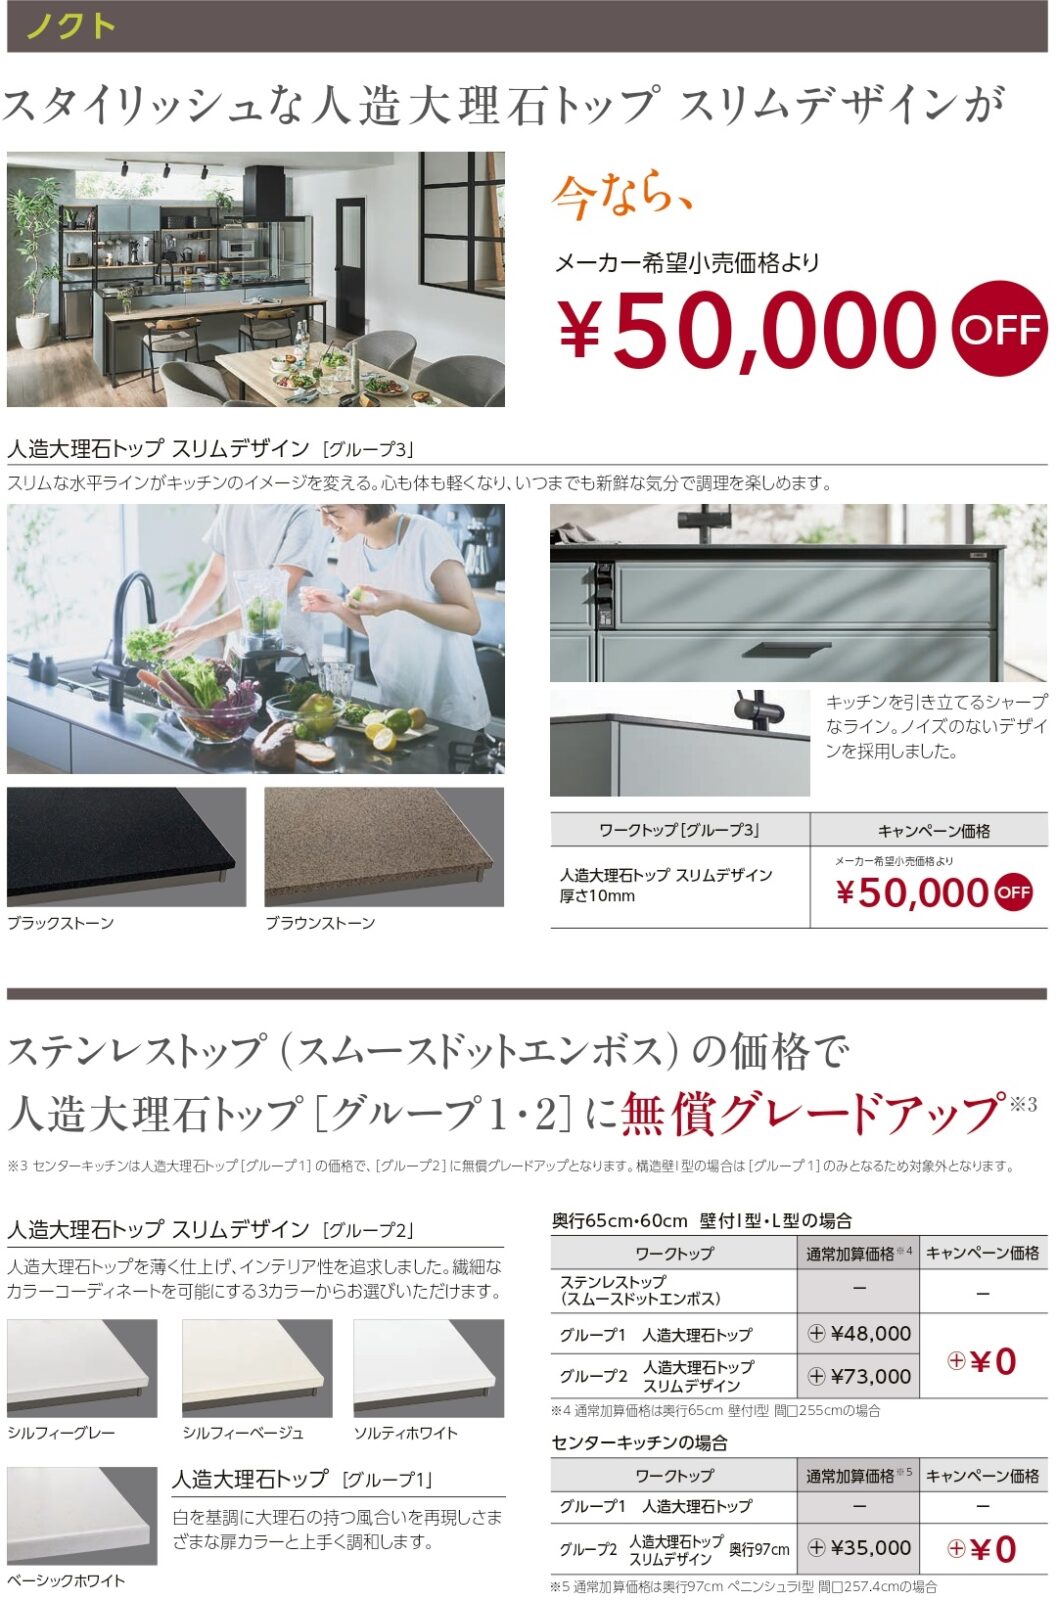 スタイリッシュな人造大理石トップスリムデザインが今ならメーカー希望小売価格より¥50,000OFF